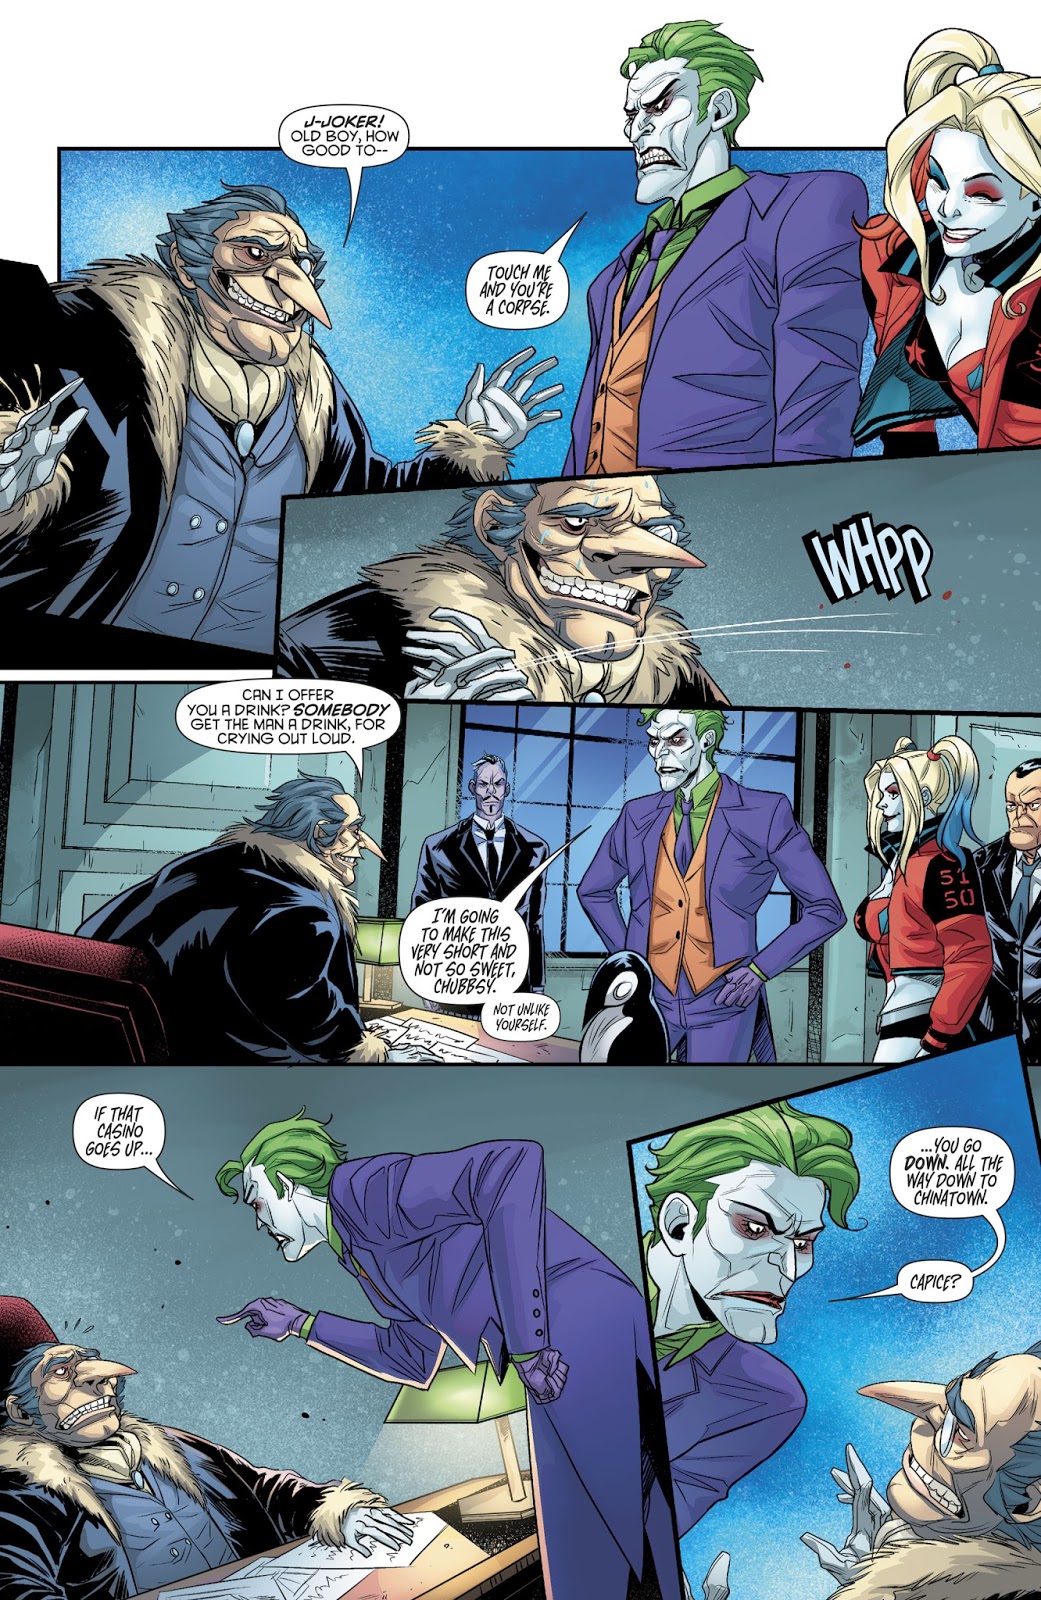 The Penguin Is Afraid Of The Joker (Harley Quinn Vol. 3 #27)